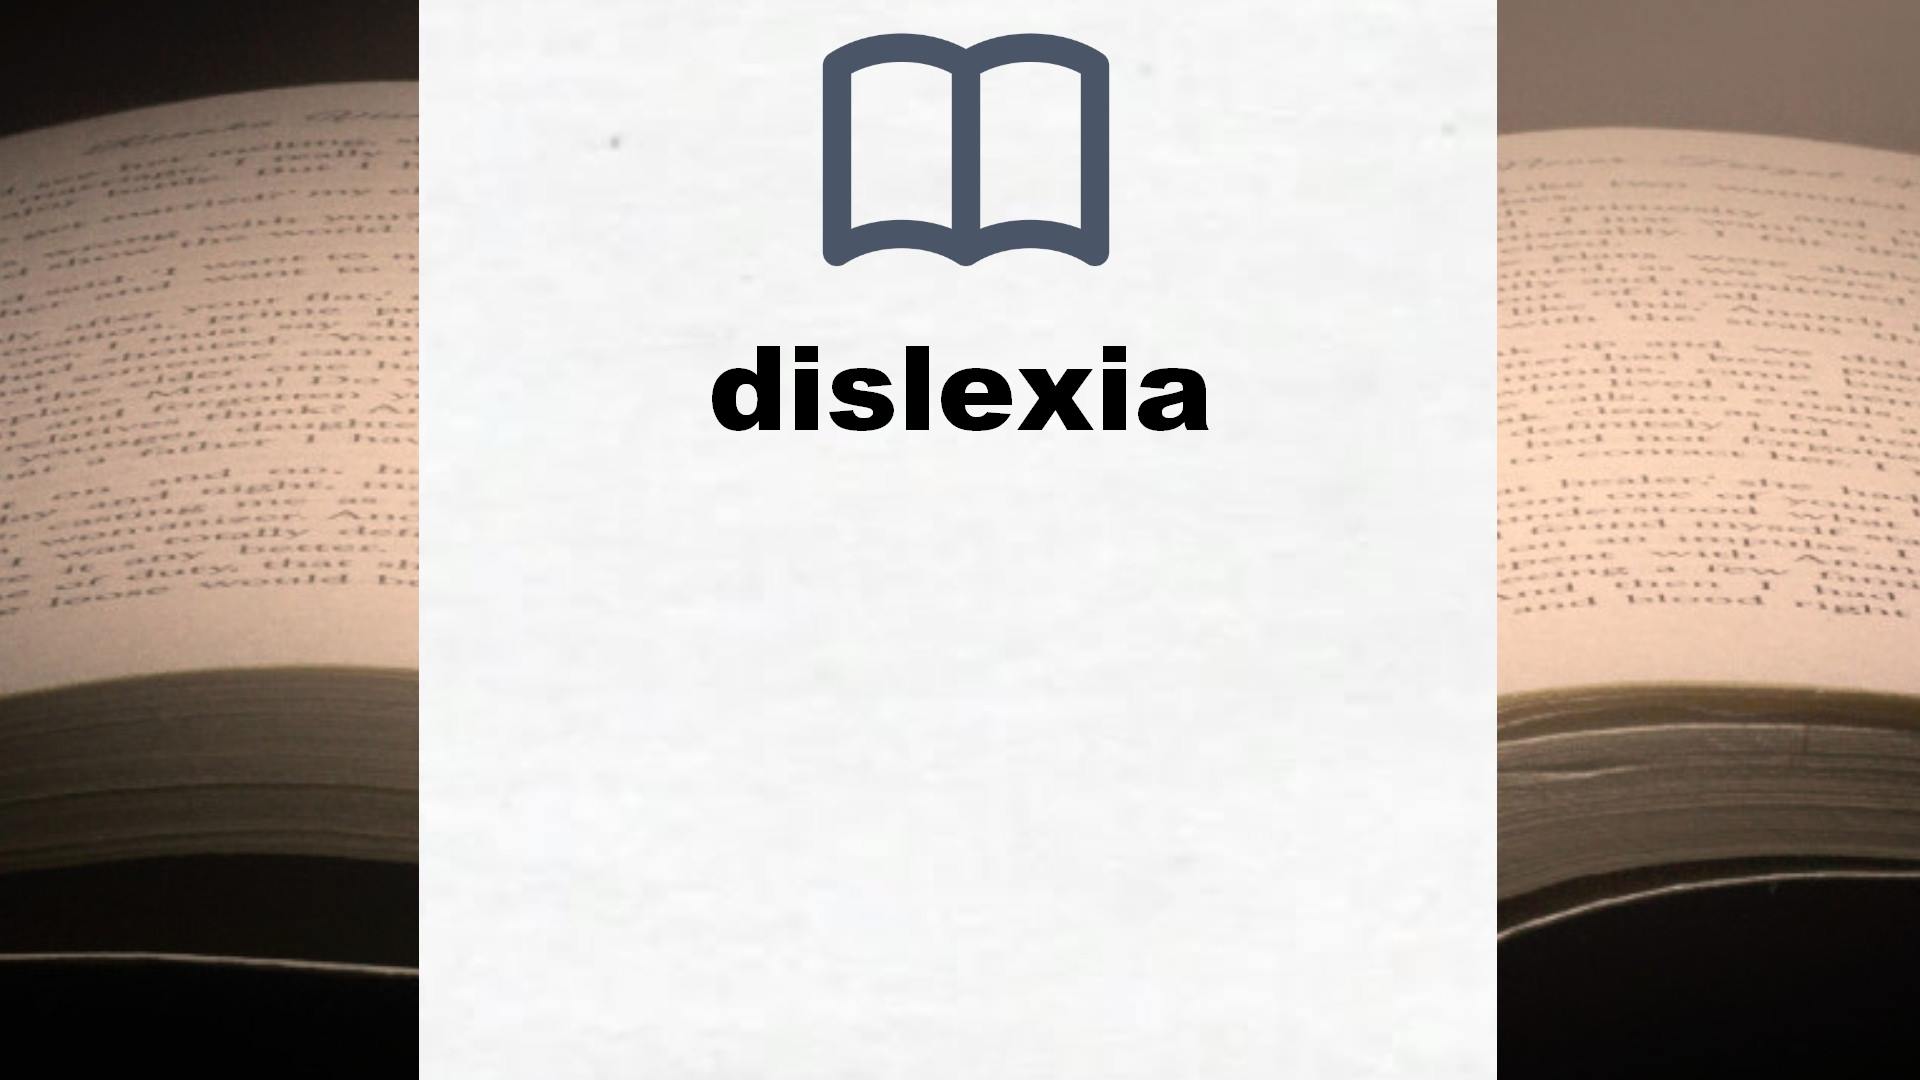 Libros sobre dislexia